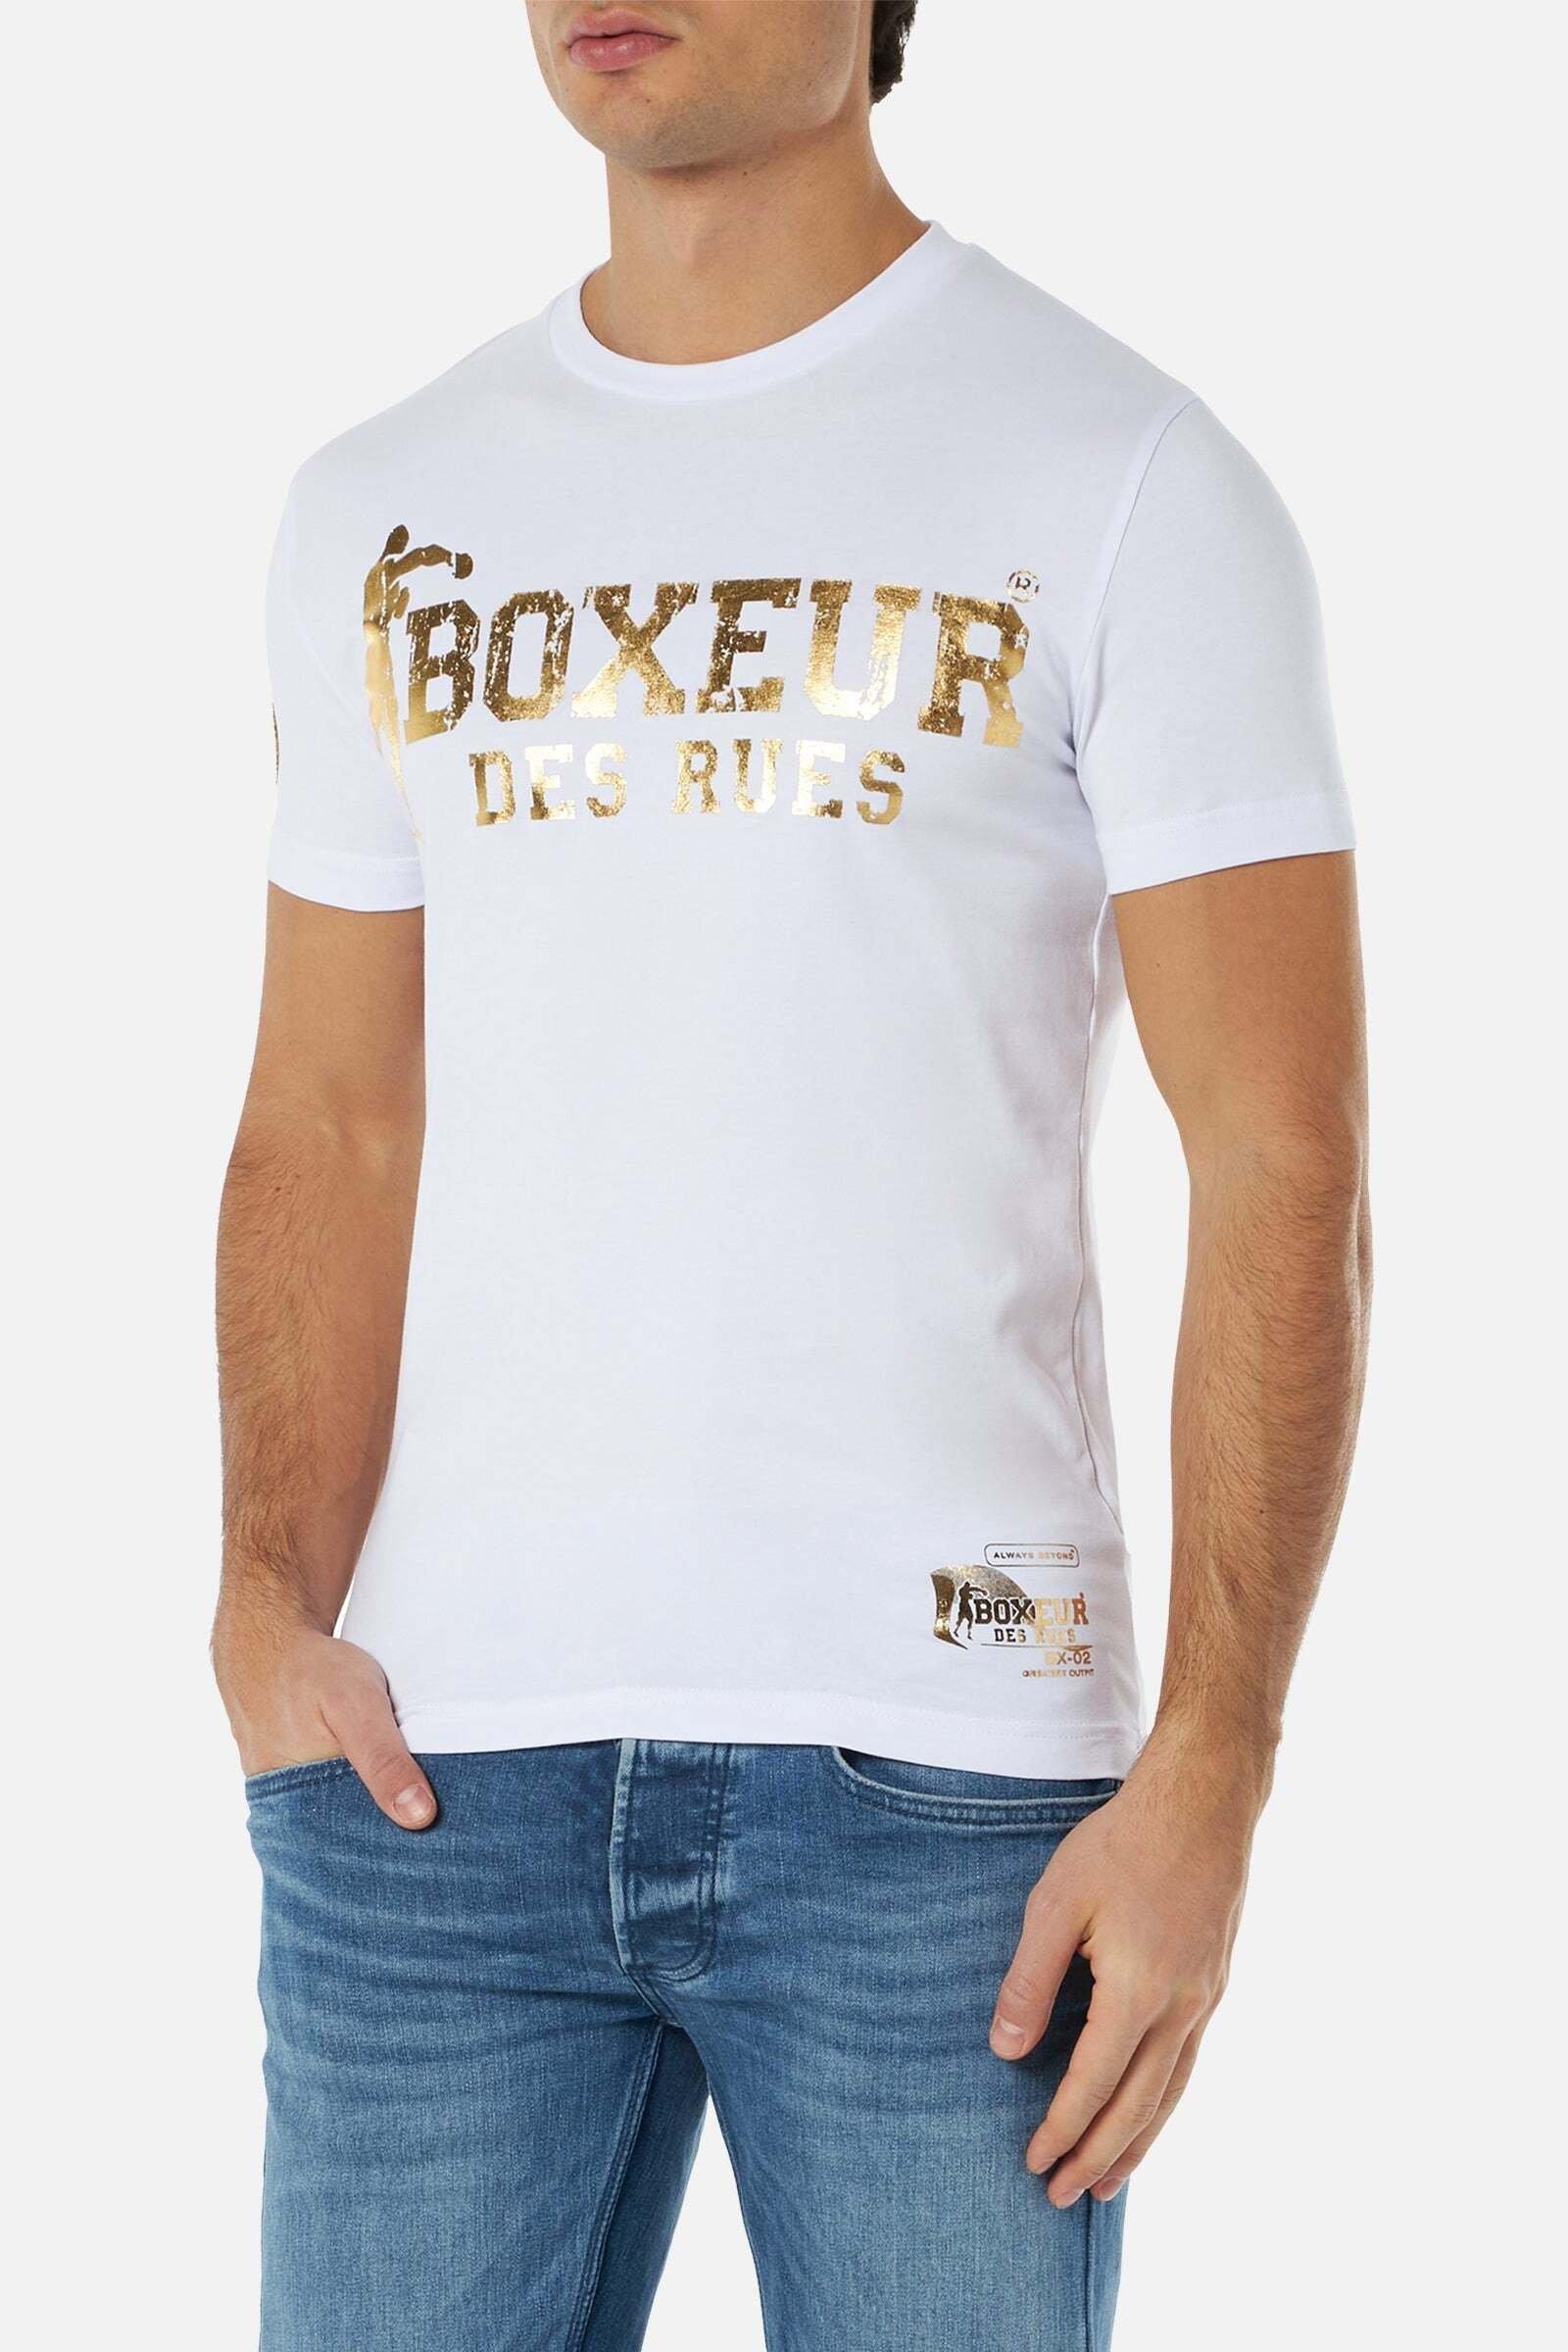 kaufen 2 T-Shirt BOXEUR Boxeur online | MANOR Street RUES T-Shirts DES -